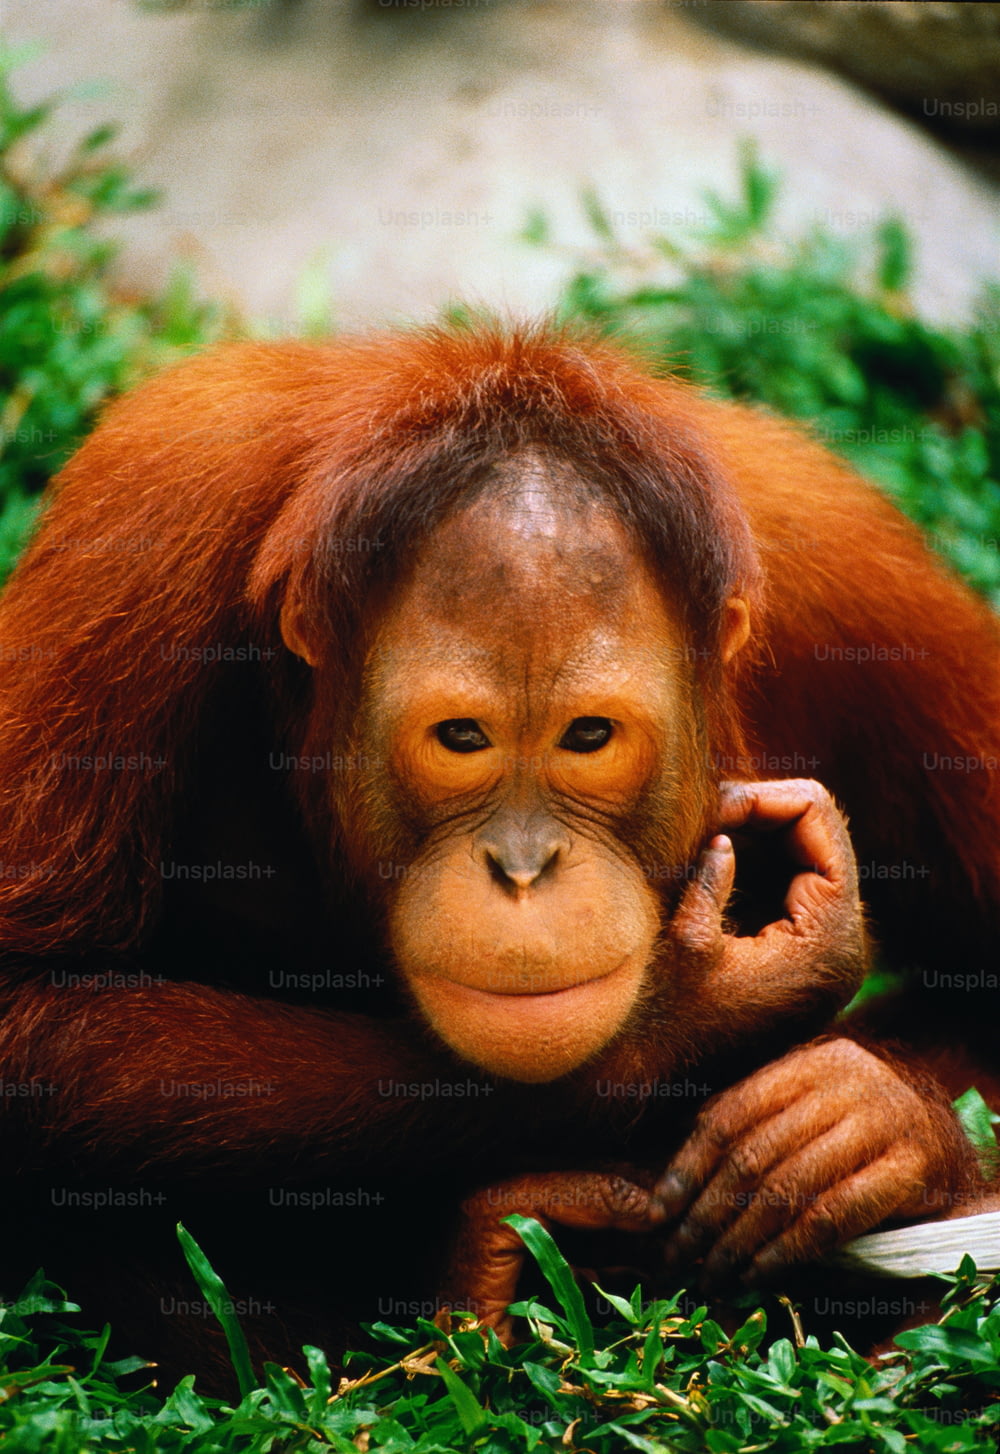 Cativo, localização desconhecida. Orang-utan é um nome malaio que significa "homem da floresta". Os orang-utans passam a maior parte de suas vidas em árvores;viajando em pequenos grupos durante o dia,comendo folhas e frutas,e nidificam à noite. Nativo das florestas de Bornéu e Sumatra.